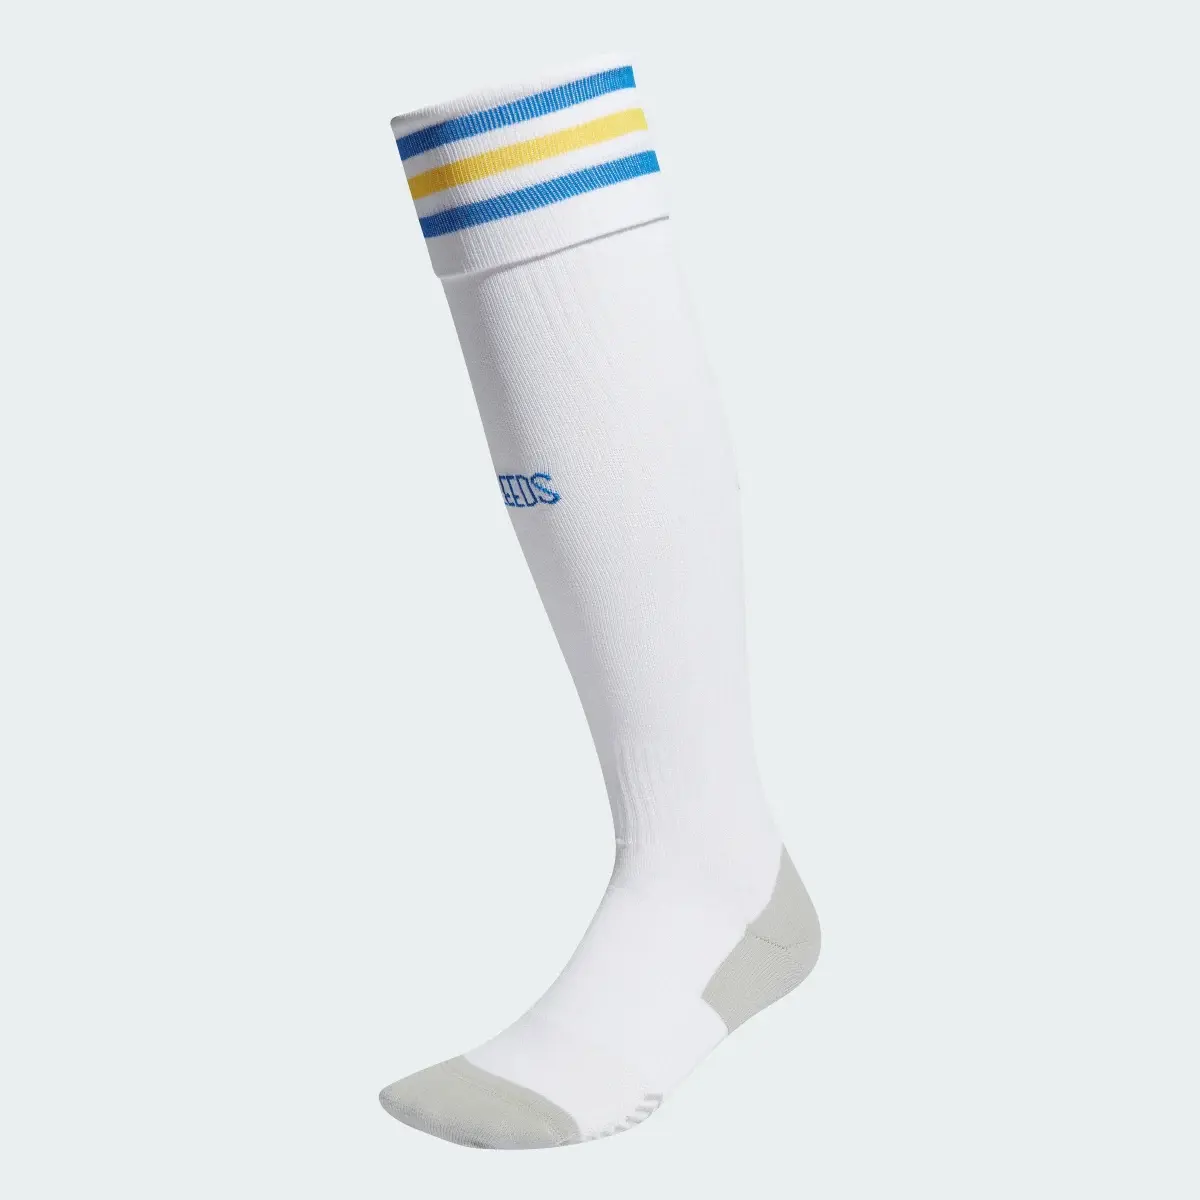 Adidas Leeds United FC 23/24 Home Socks. 2